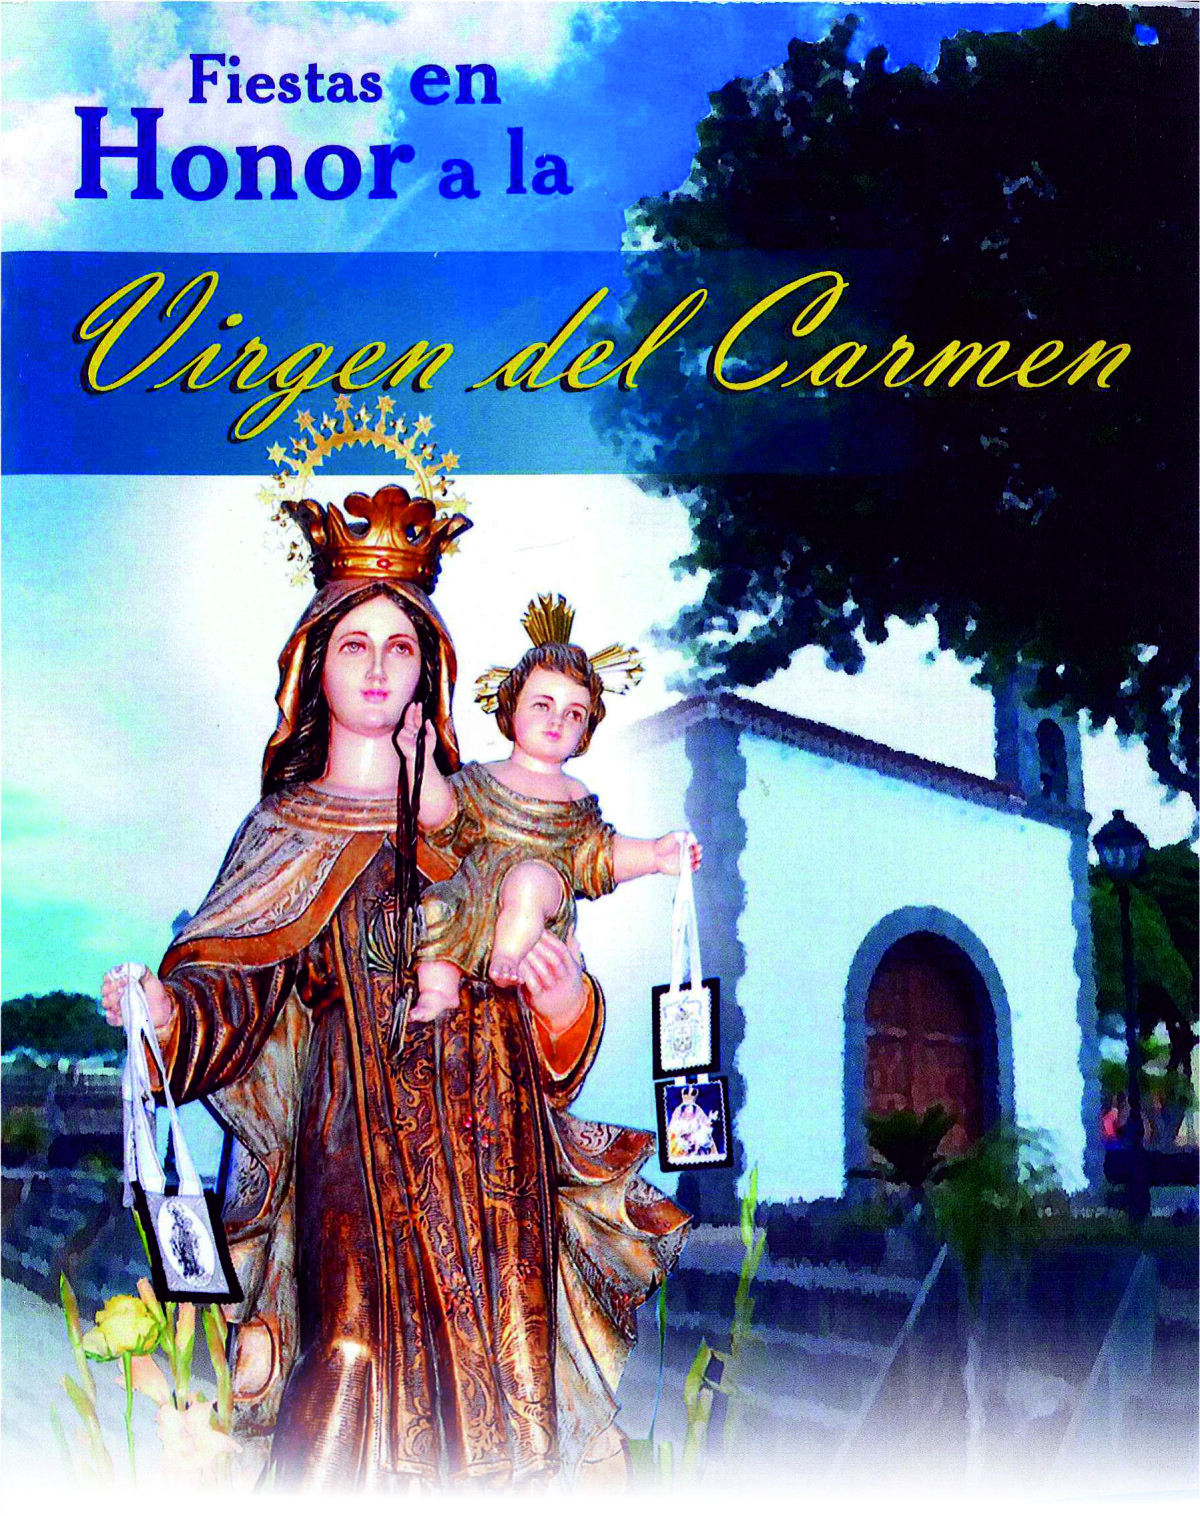 Fiestas honor a Ntra. Sra. la Virgen del Carmen – Guargacho